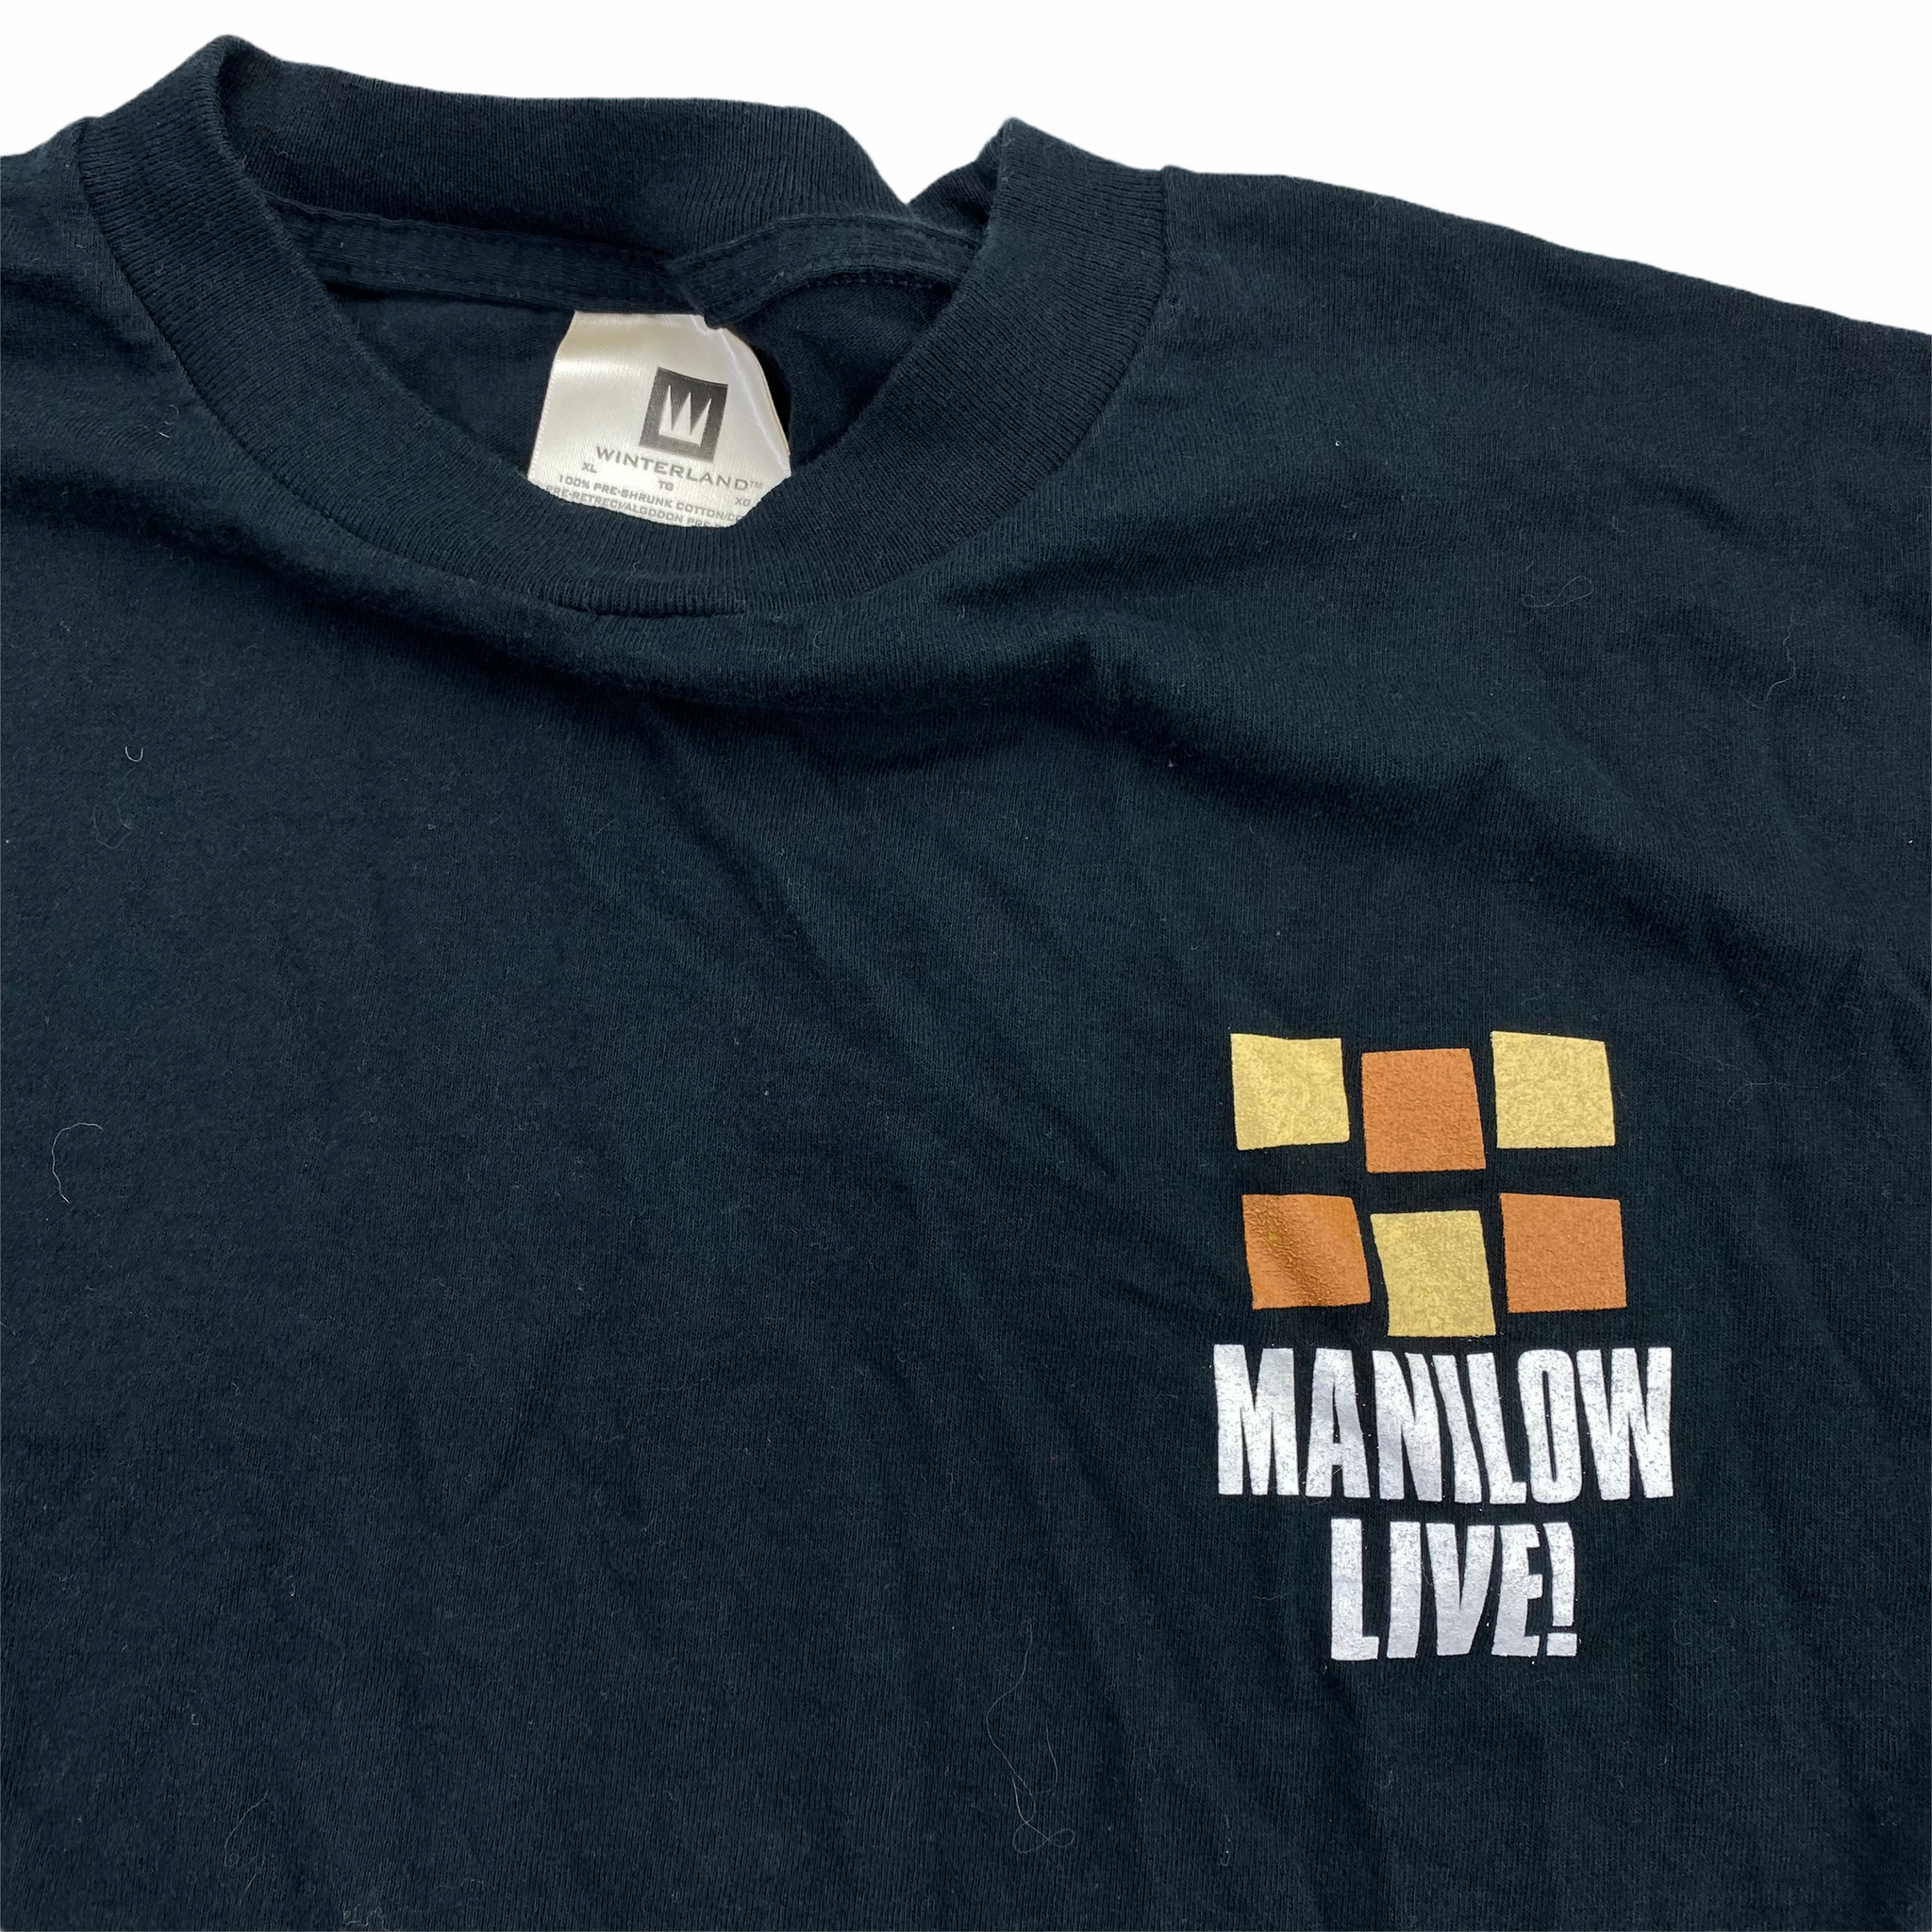 Barry Manilow 99 Tour T-Shirt XL